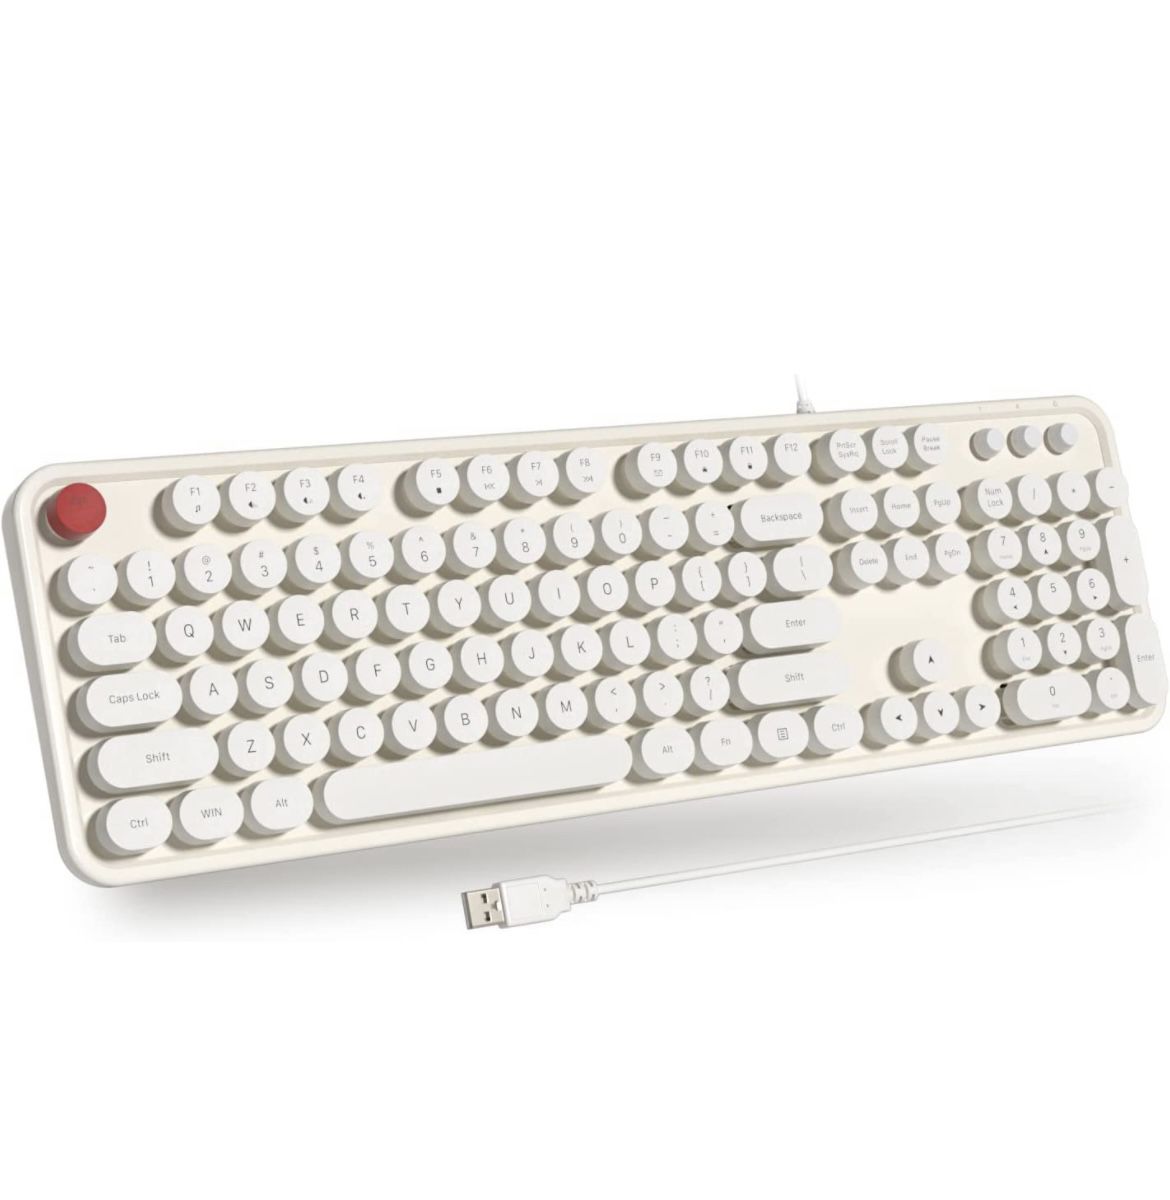 Atelus USB Wired Computer Keyboard - Retro Typewriter Keyboard - Full Size Keyboard with Number Pad for PC Laptop Desktop Windows (Creamy White)